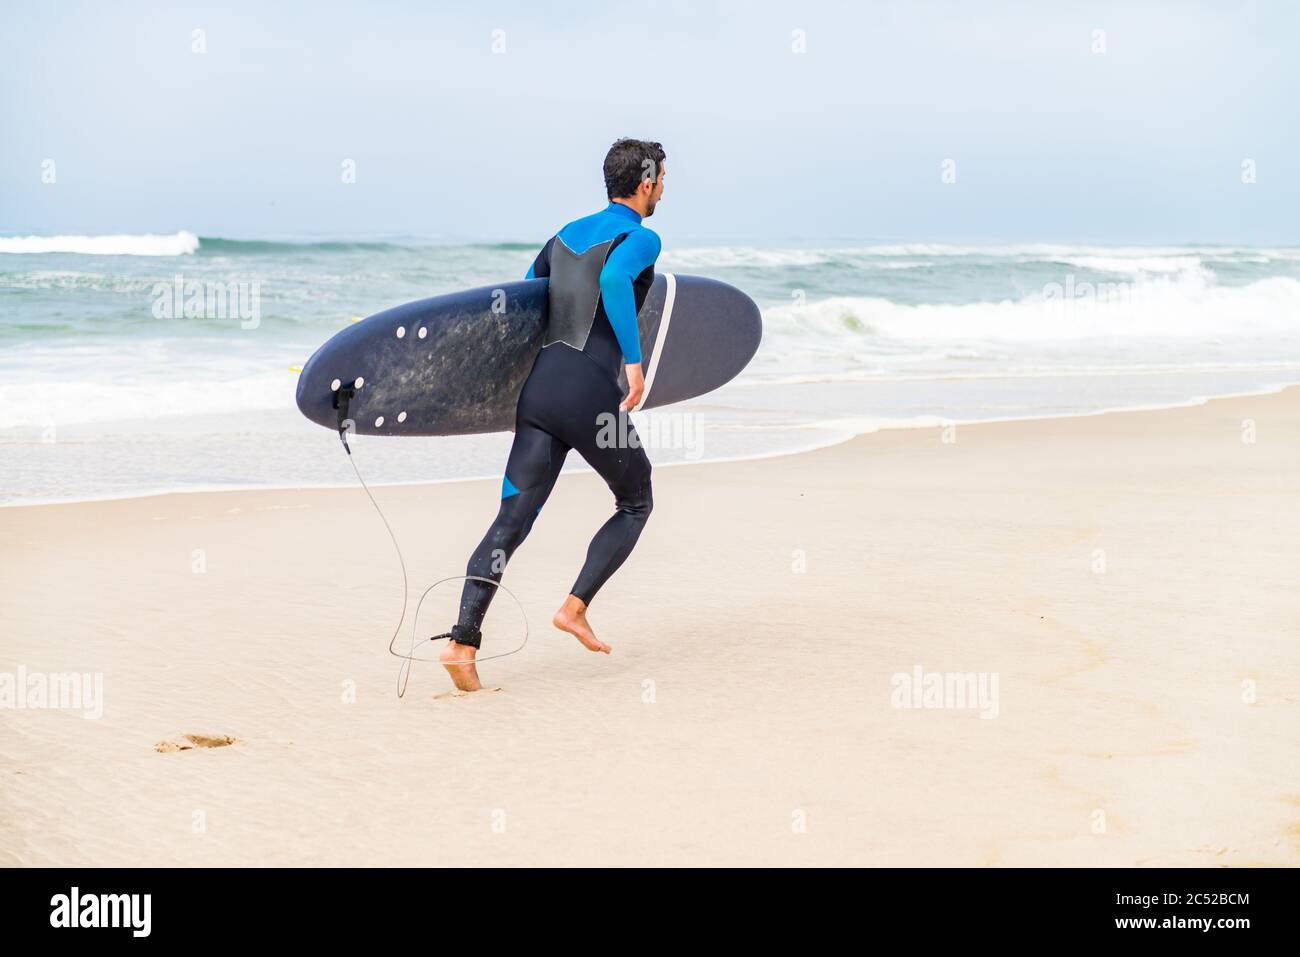 Un jeune surfeur masculin portant une combinaison, tenant une planche de surf sous son bras, courant sur la plage après une séance de surf matinale. Banque D'Images